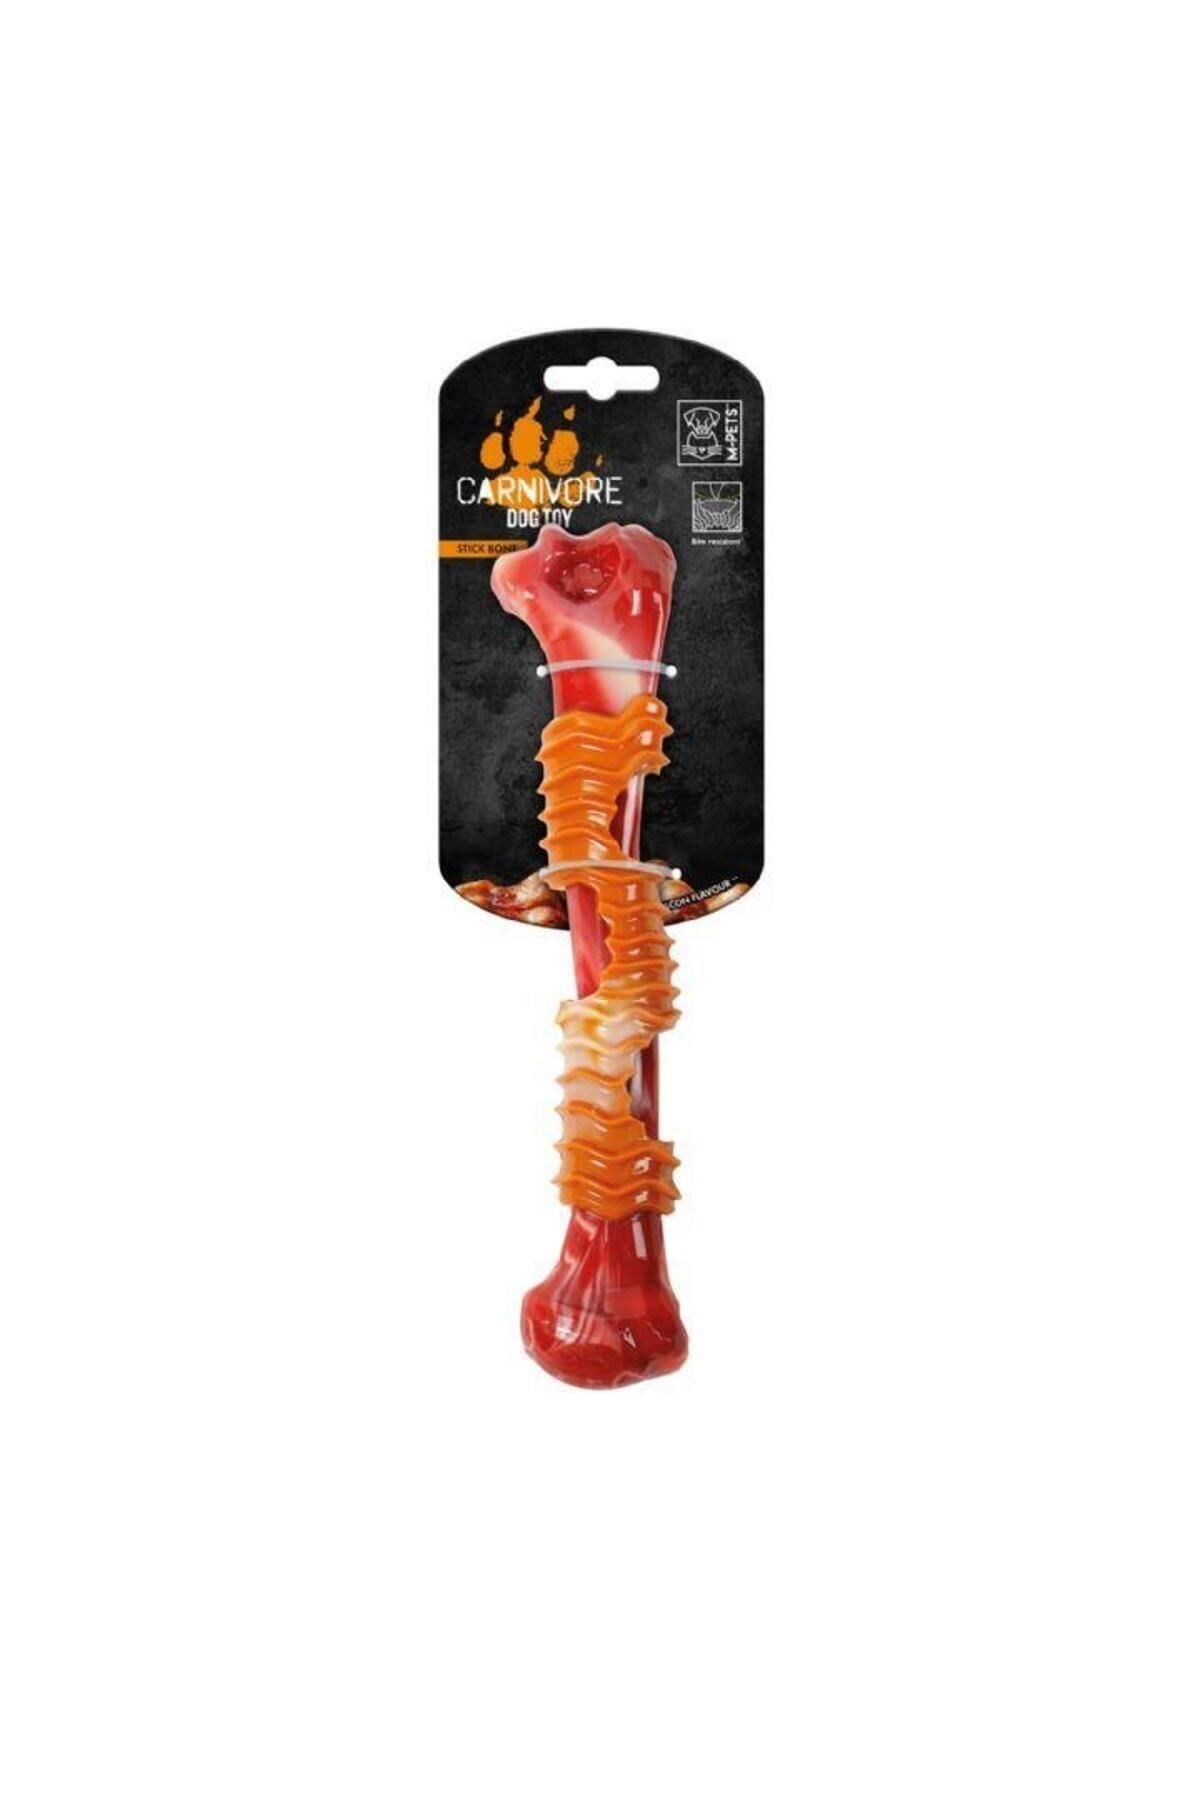 M-PETS Carnivore Stick Dog Toy Pastırma Aromalı Kemirme Oyuncağı, Kemik